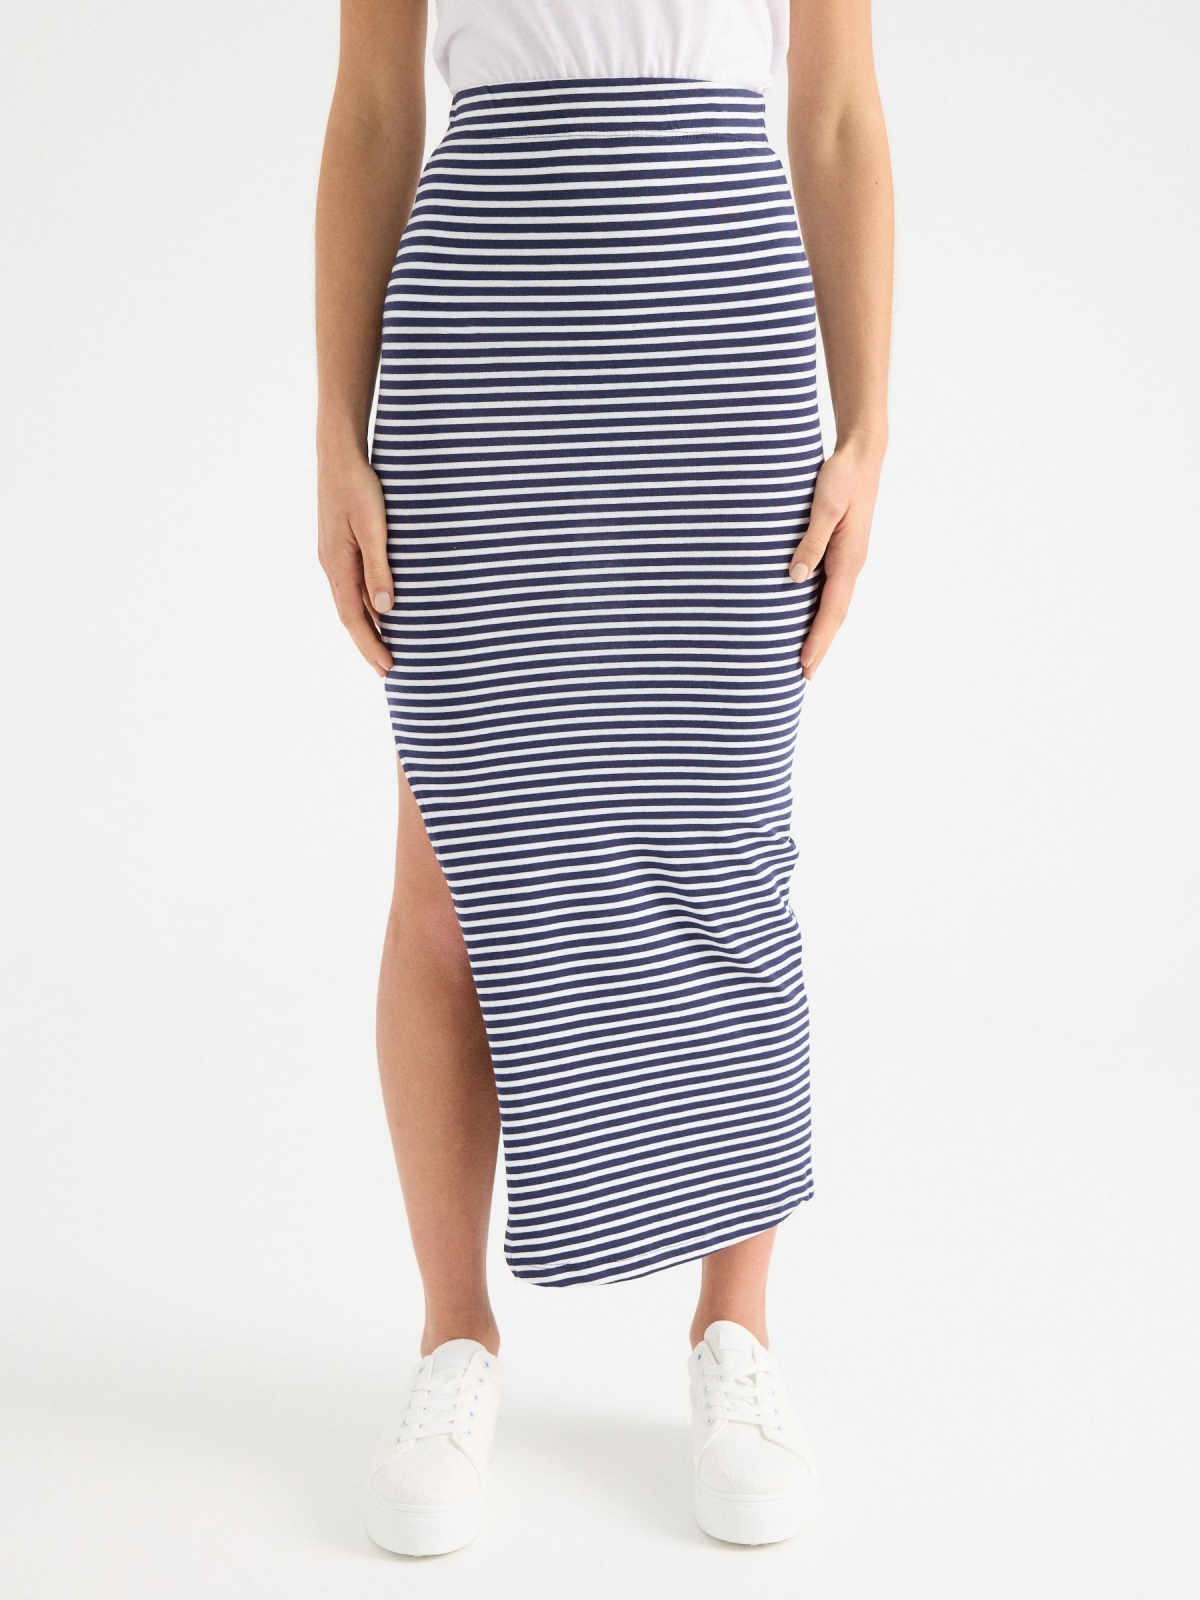 Falda larga estampado rayas azul marino vista media trasera